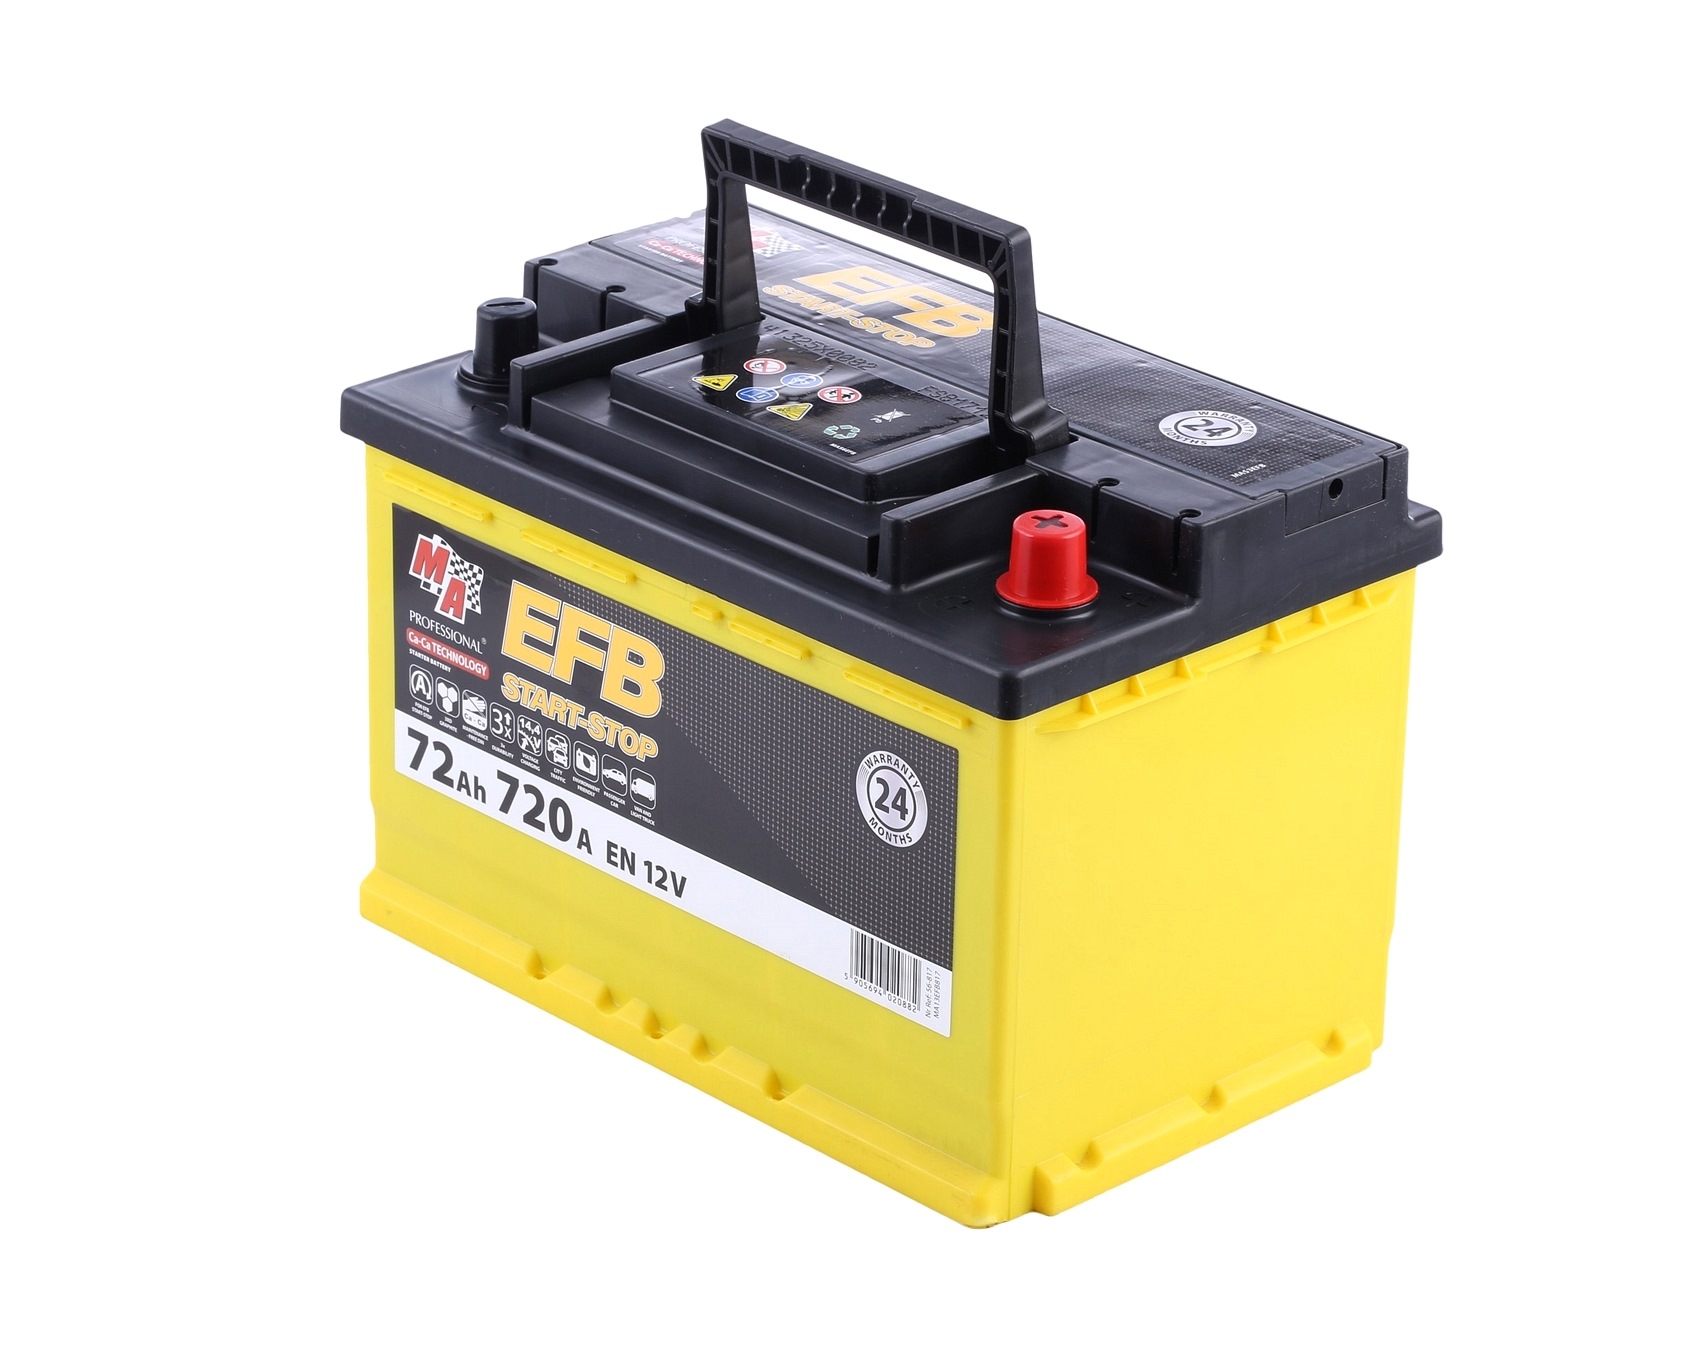 56-817 EMPEX EL700 (067EFB) Batterie 12V 72Ah 720A B13 EFB